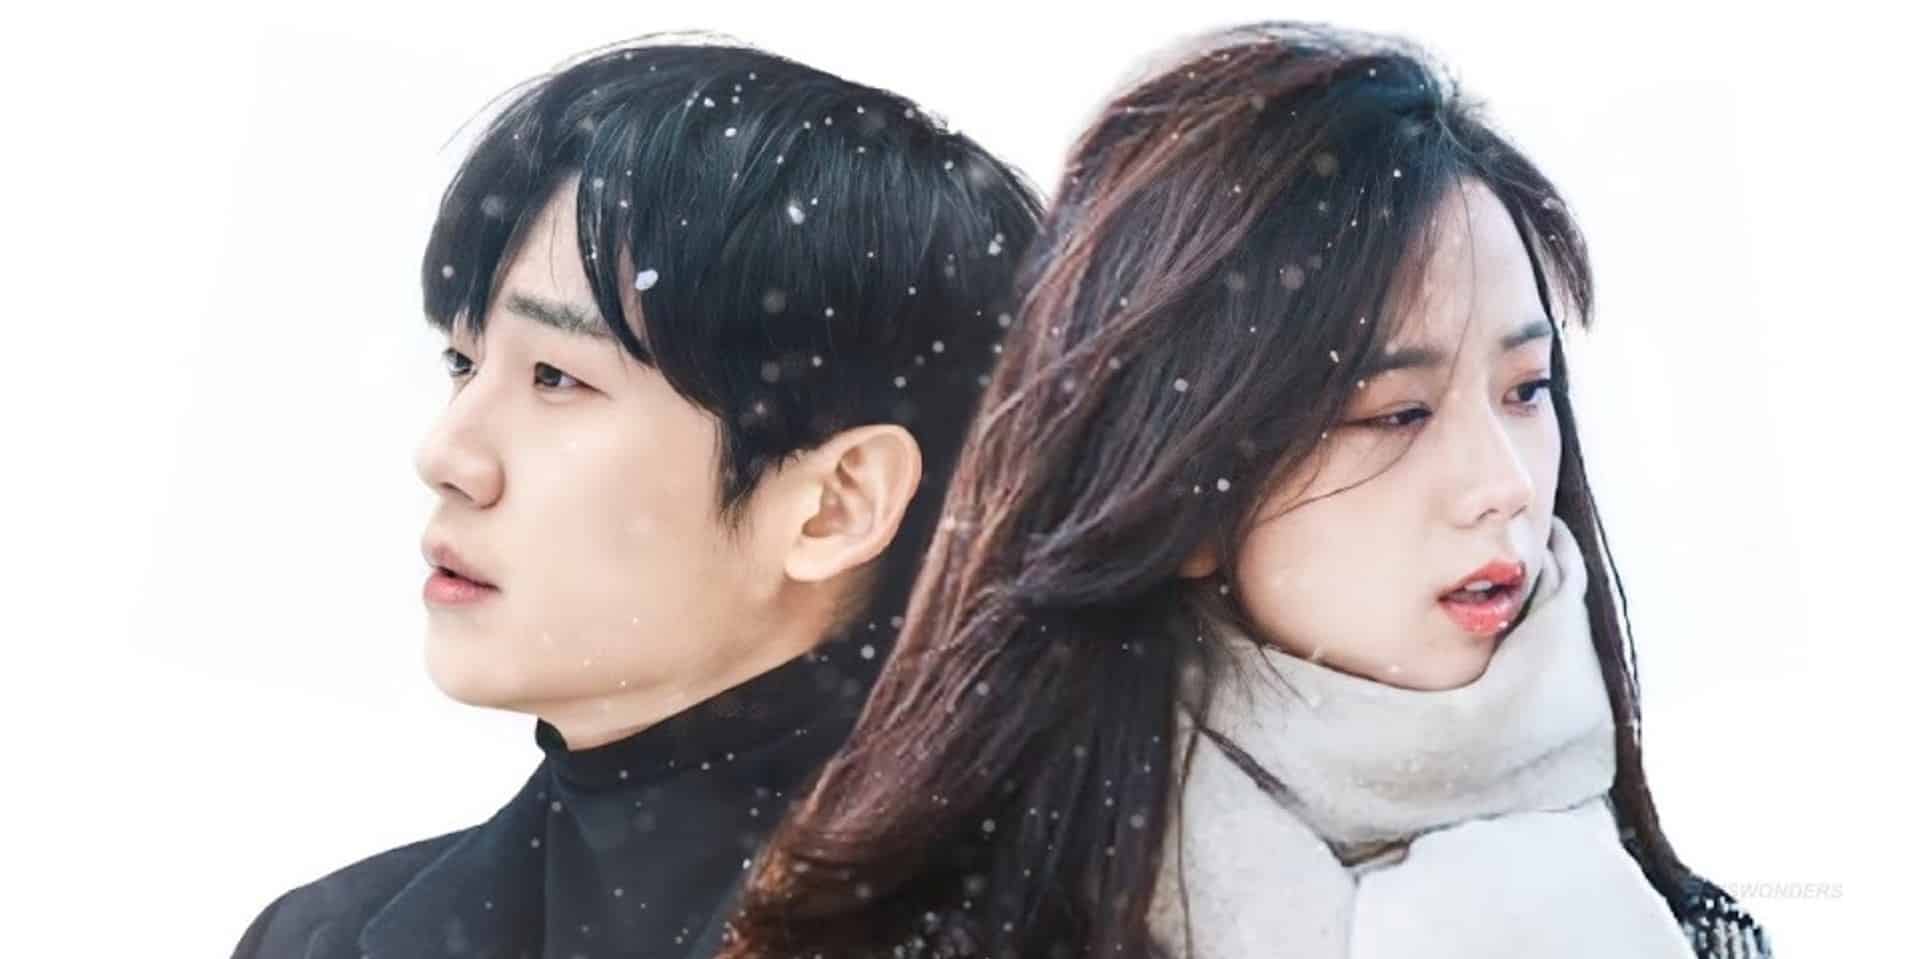 Korean Series “Snowdrop” Featuring Blackpink's Jisoo Is Coming Soon To  Disney+ – What's On Disney Plus